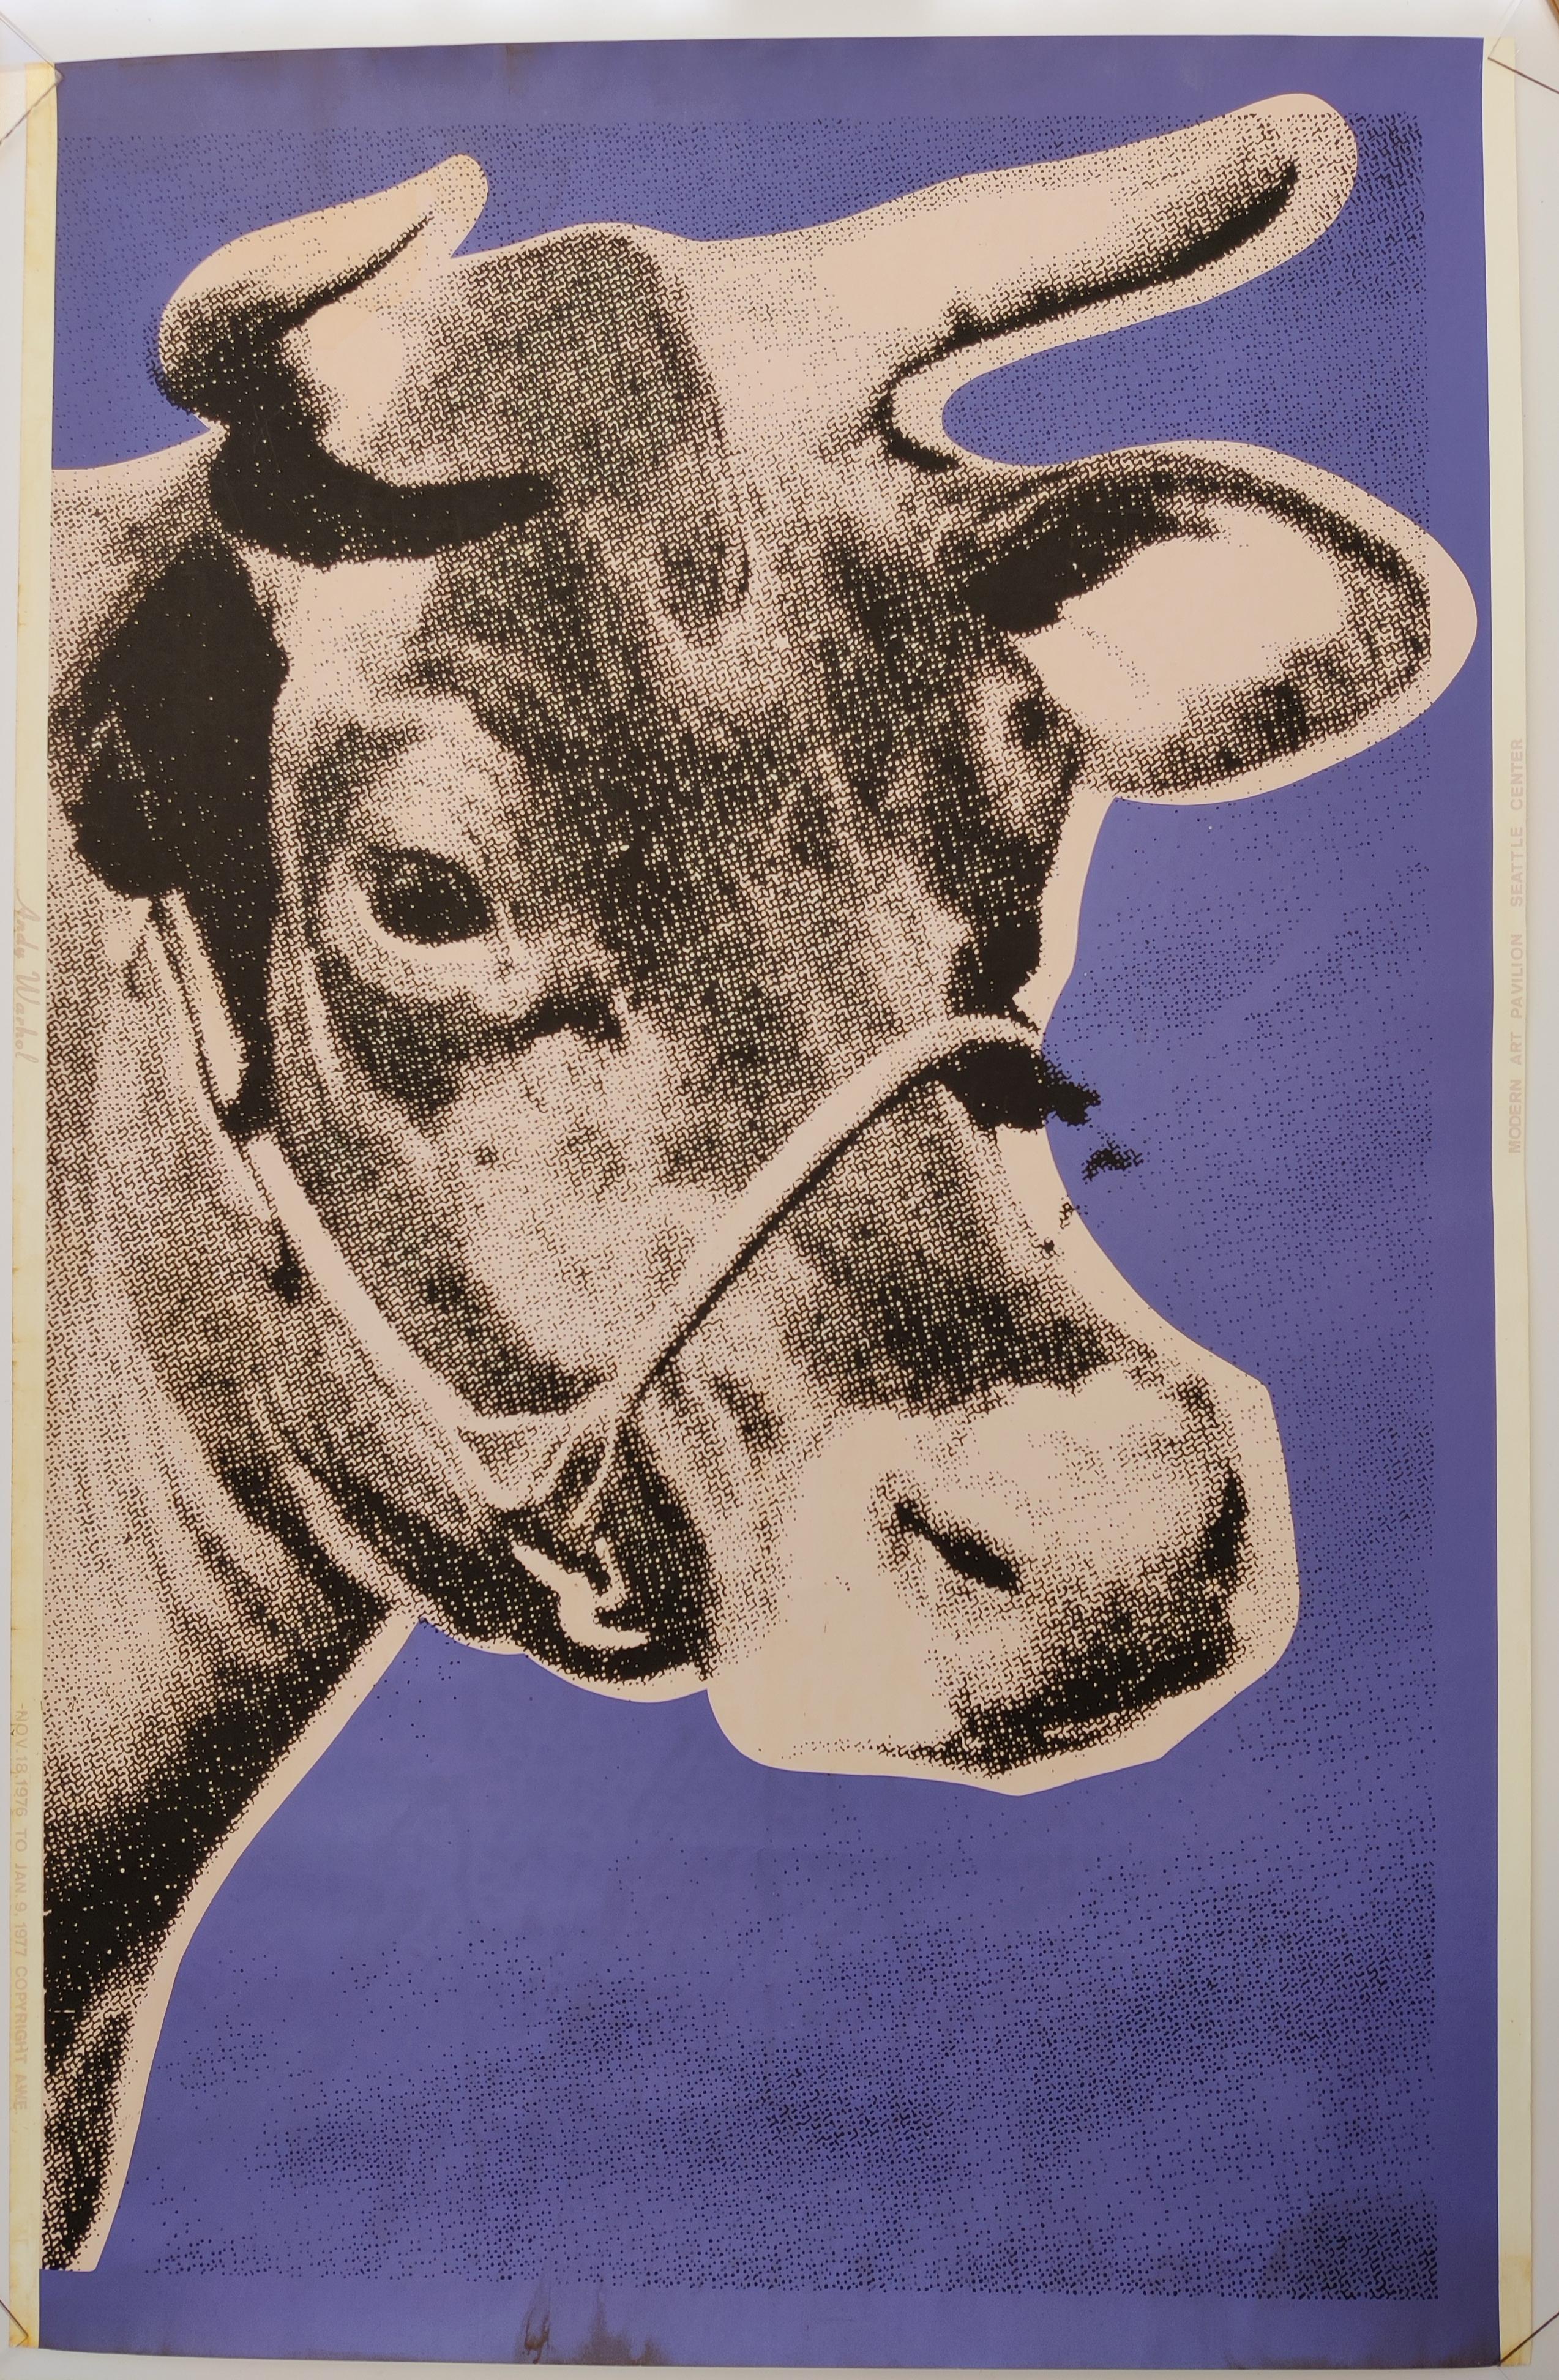 Andy Warhol 
Vache, 1971
Sérigraphie sur papier peint, non signée
Vache sur fond rose tendre, entourée d'un fond violet. 
Dans la marge gauche, dans le même rose tendre, on peut lire "Andy Warhol" et un peu plus bas "NOV. 18, 1976 TO JAN. 9, 1977